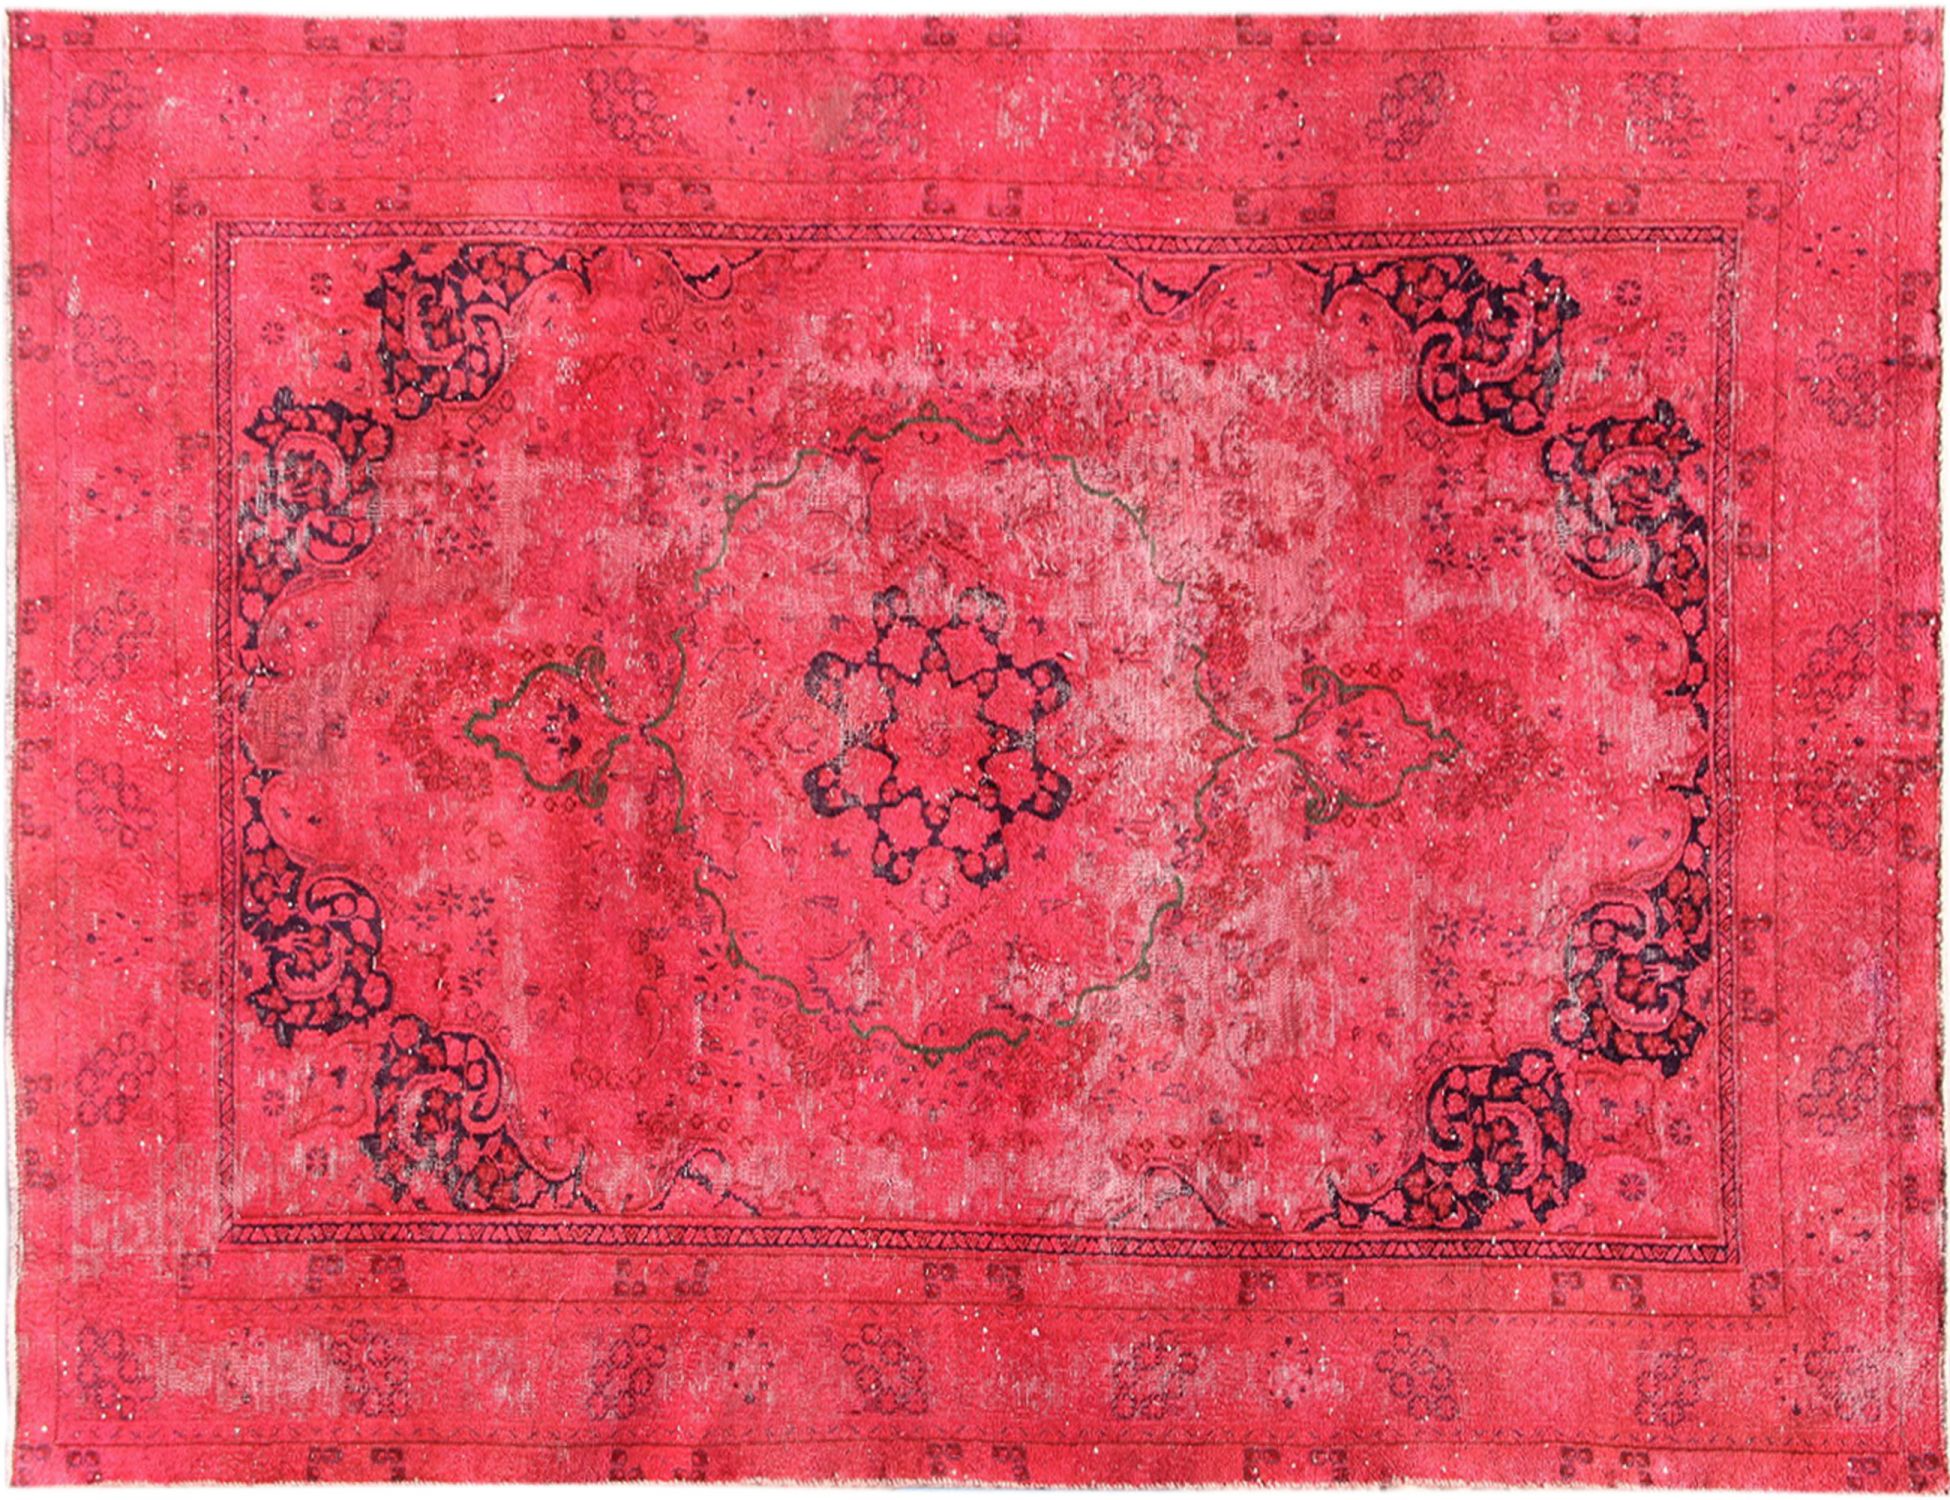 Persischer Vintage Teppich  rot <br/>290 x 180 cm